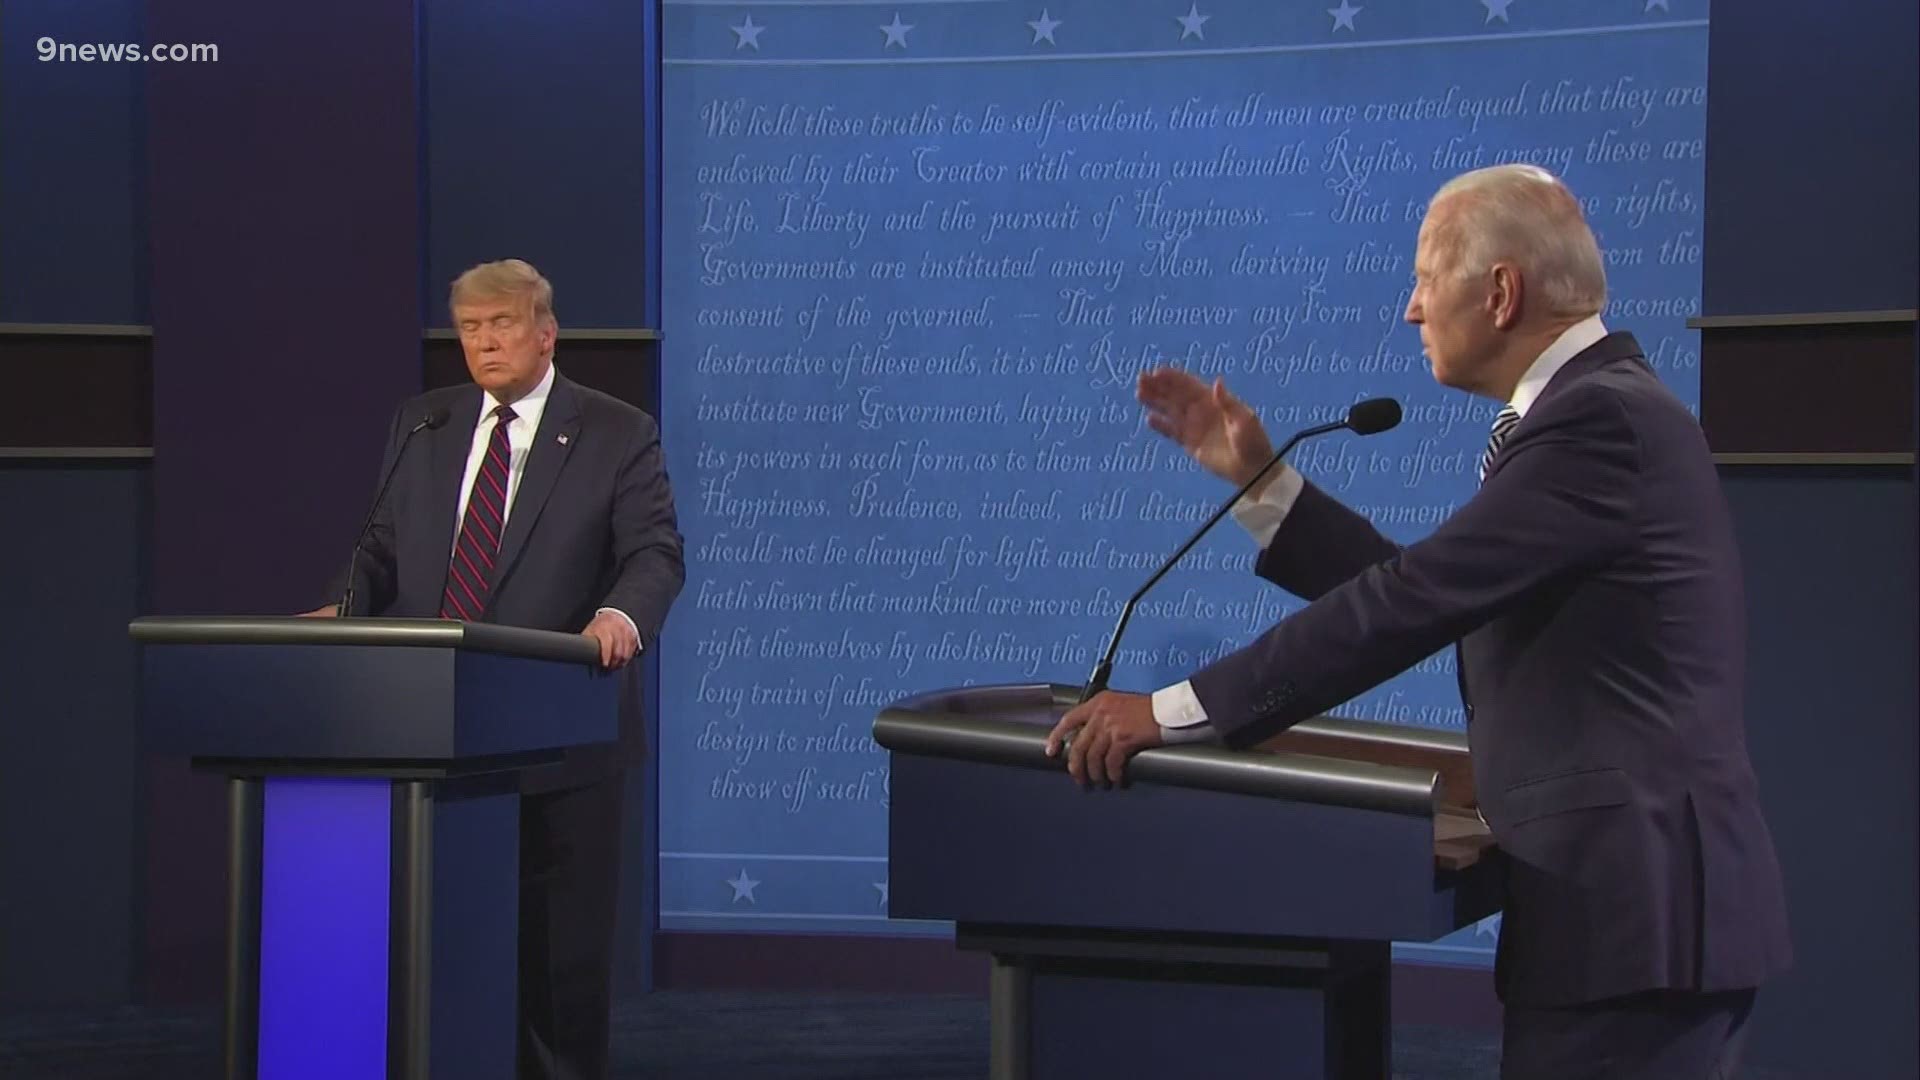 The first presidential debate between President Donald Trump and Joe Biden got off to an contentious start.